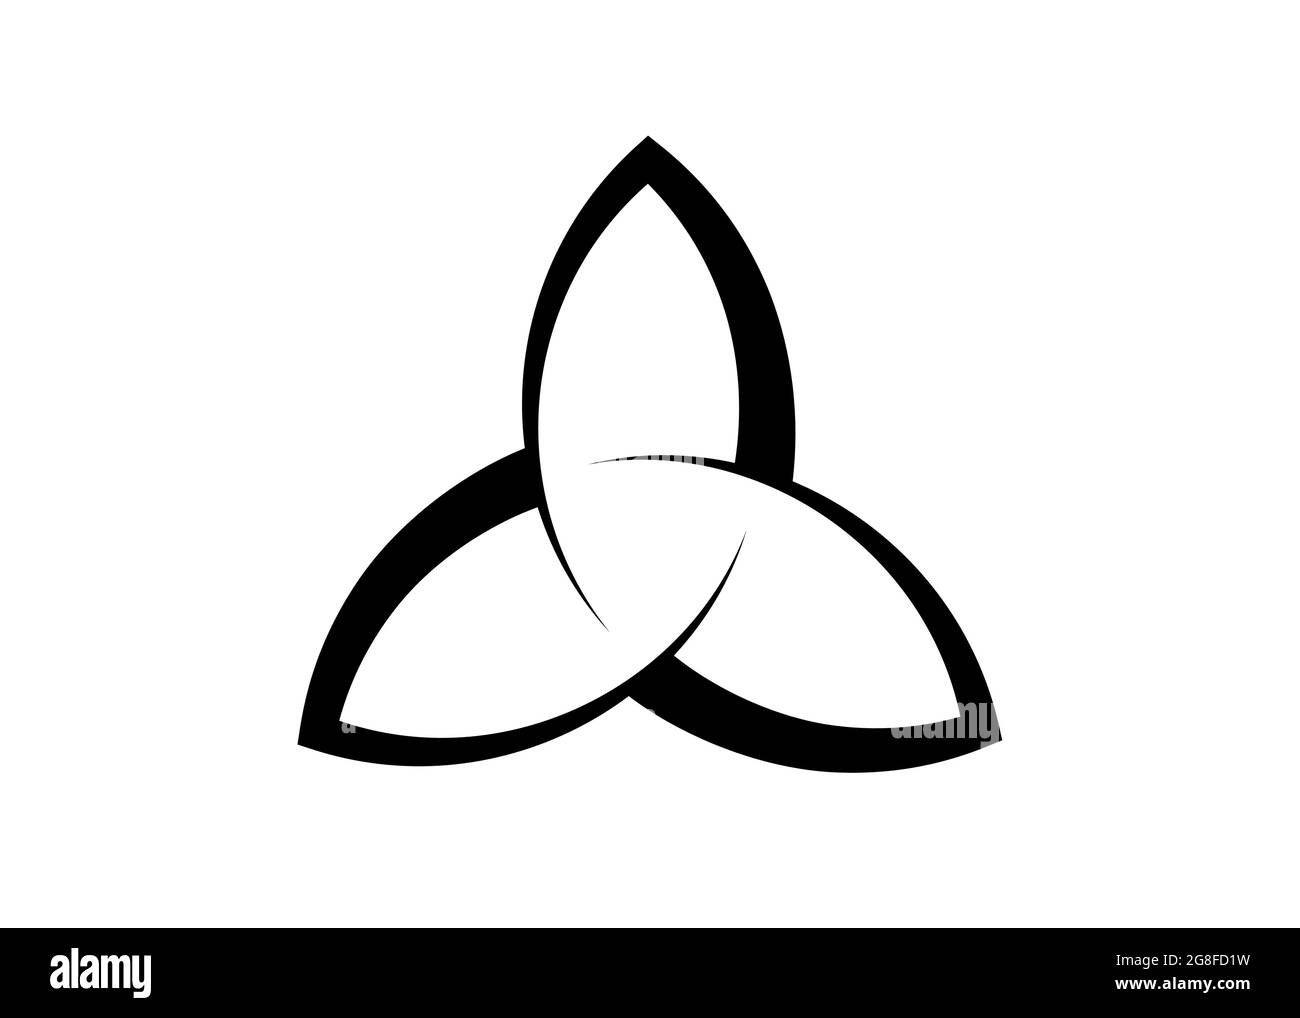 Logo Triquetra, tatouage Trinity Knot, symbole celtique Pagan Triple Déesse. Signe Wicca, livre d'ombres, vecteur de divination Wicca isolé sur blanc Illustration de Vecteur